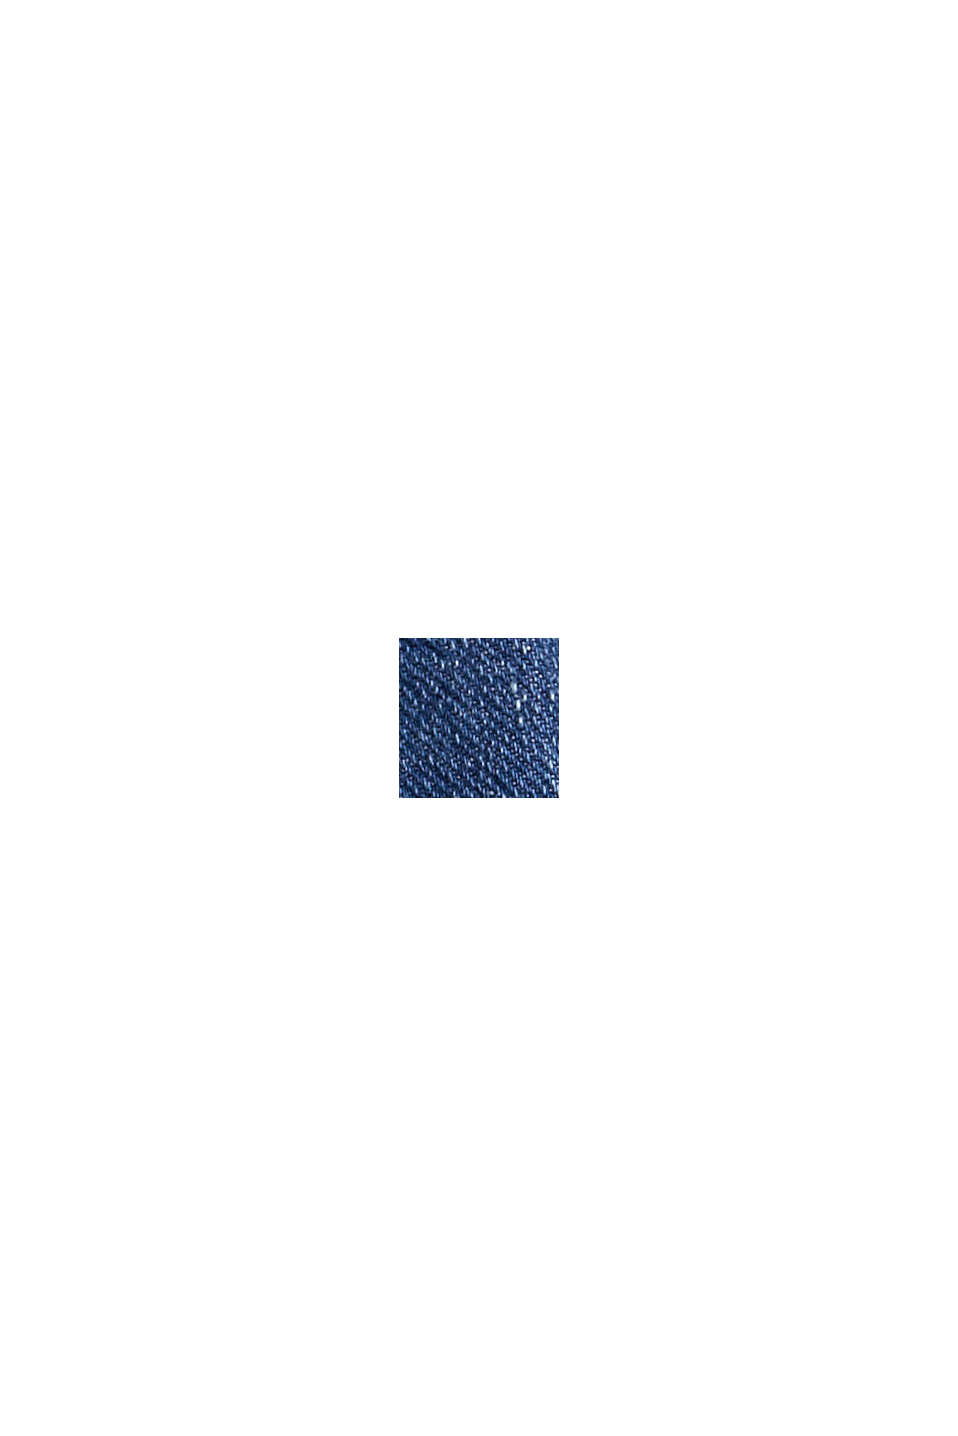 Dżinsy typu bootcut z naszytymi kieszeniami, BLUE MEDIUM WASHED, swatch